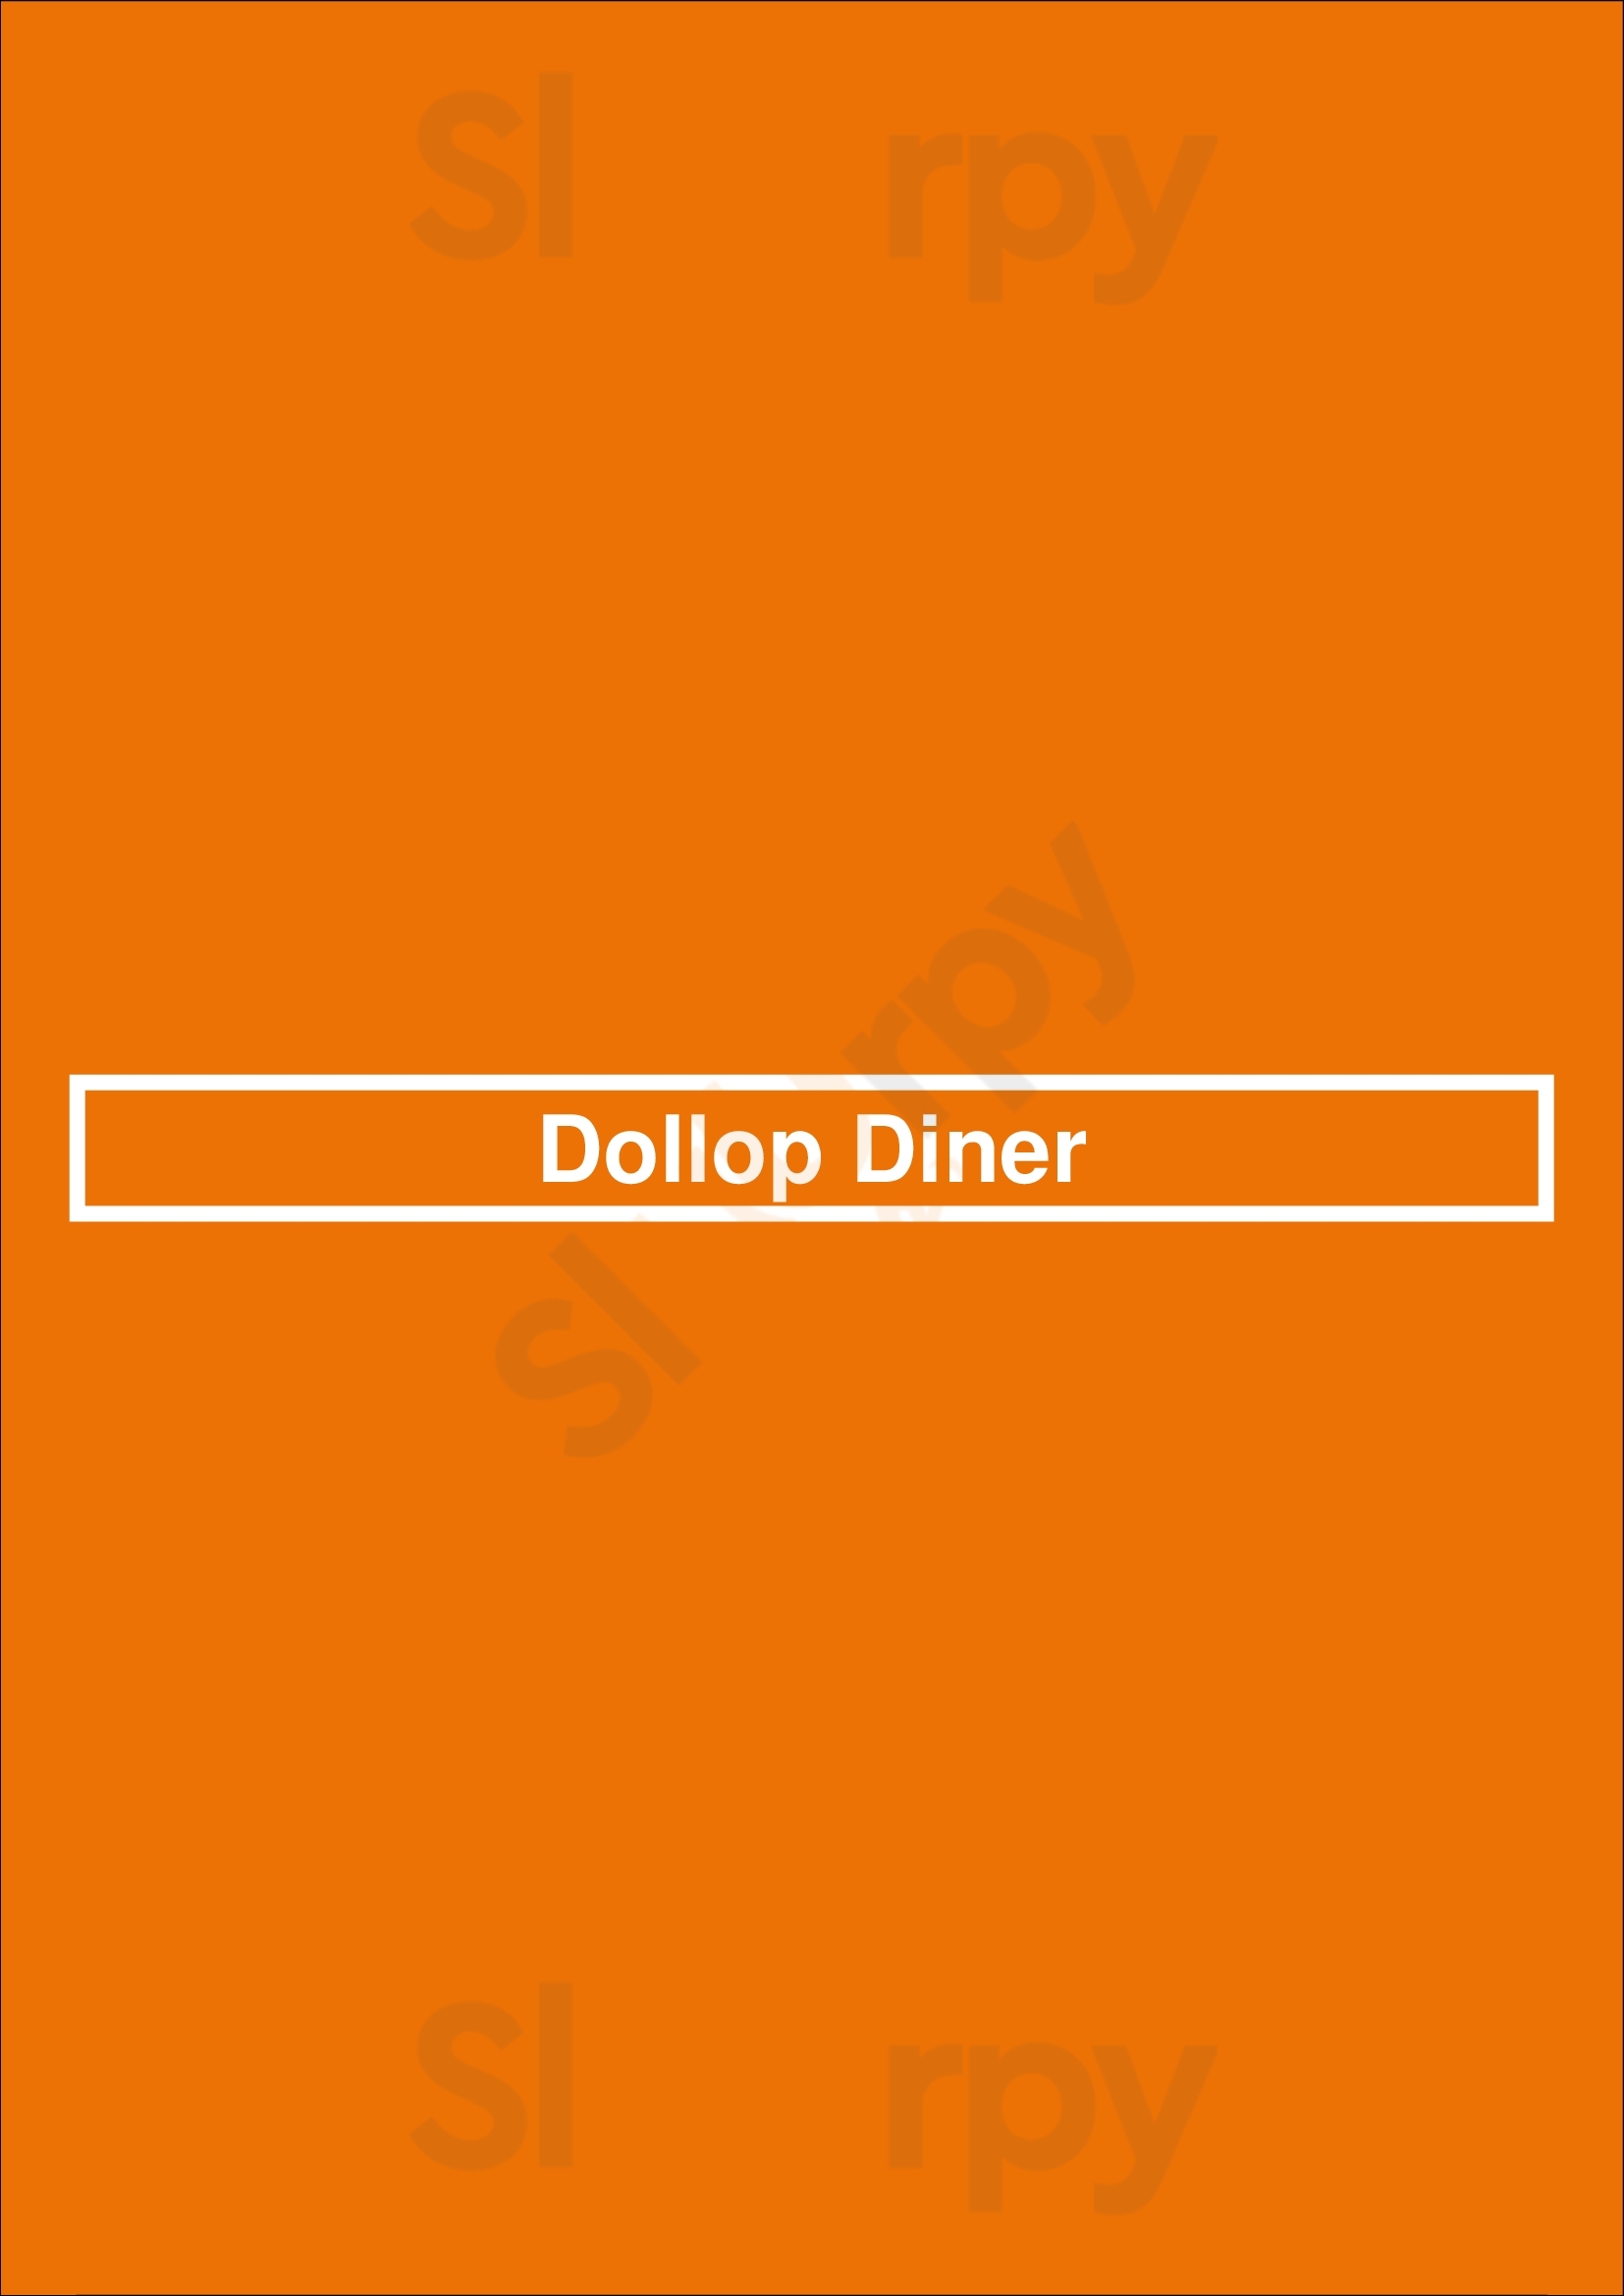 Dollop Diner Chicago Menu - 1